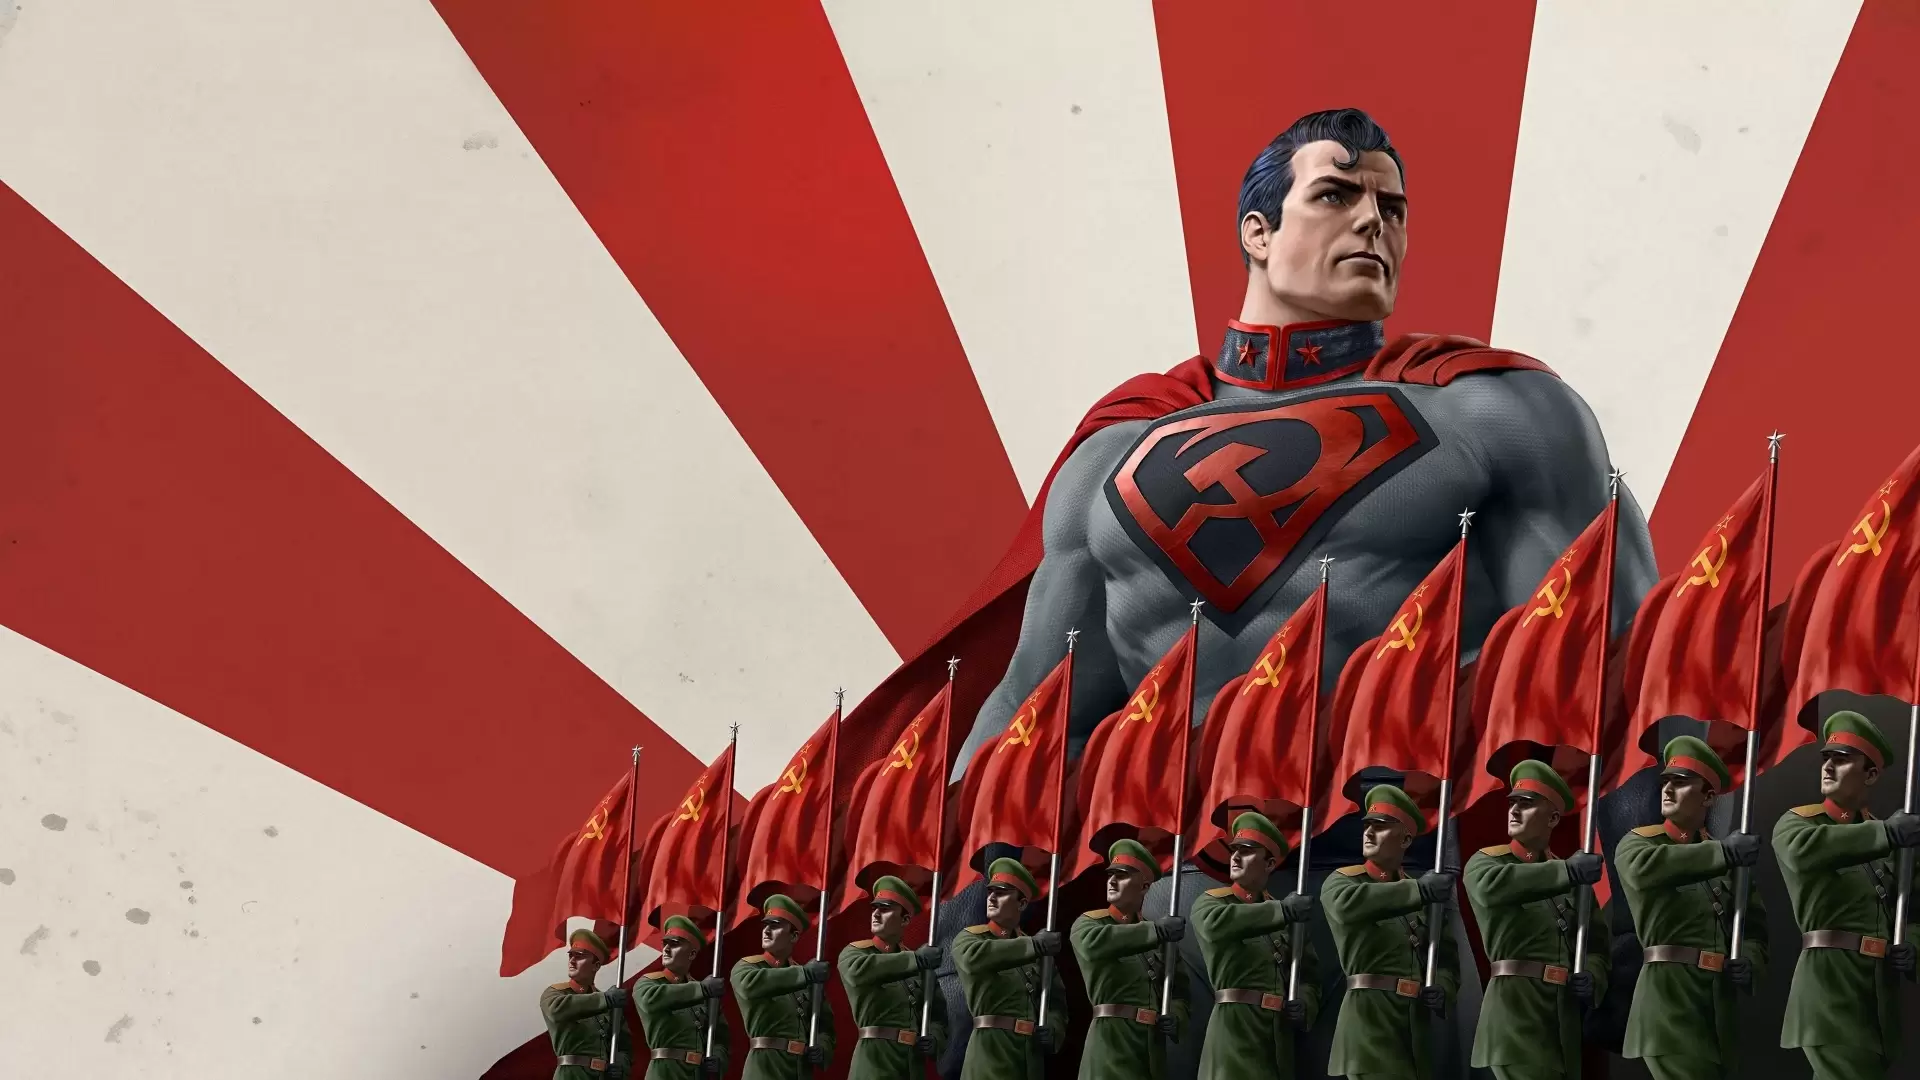 دانلود انیمیشن Superman: Red Son 2020 (سوپرمن: فرزند سرخ) با زیرنویس فارسی و تماشای آنلاین